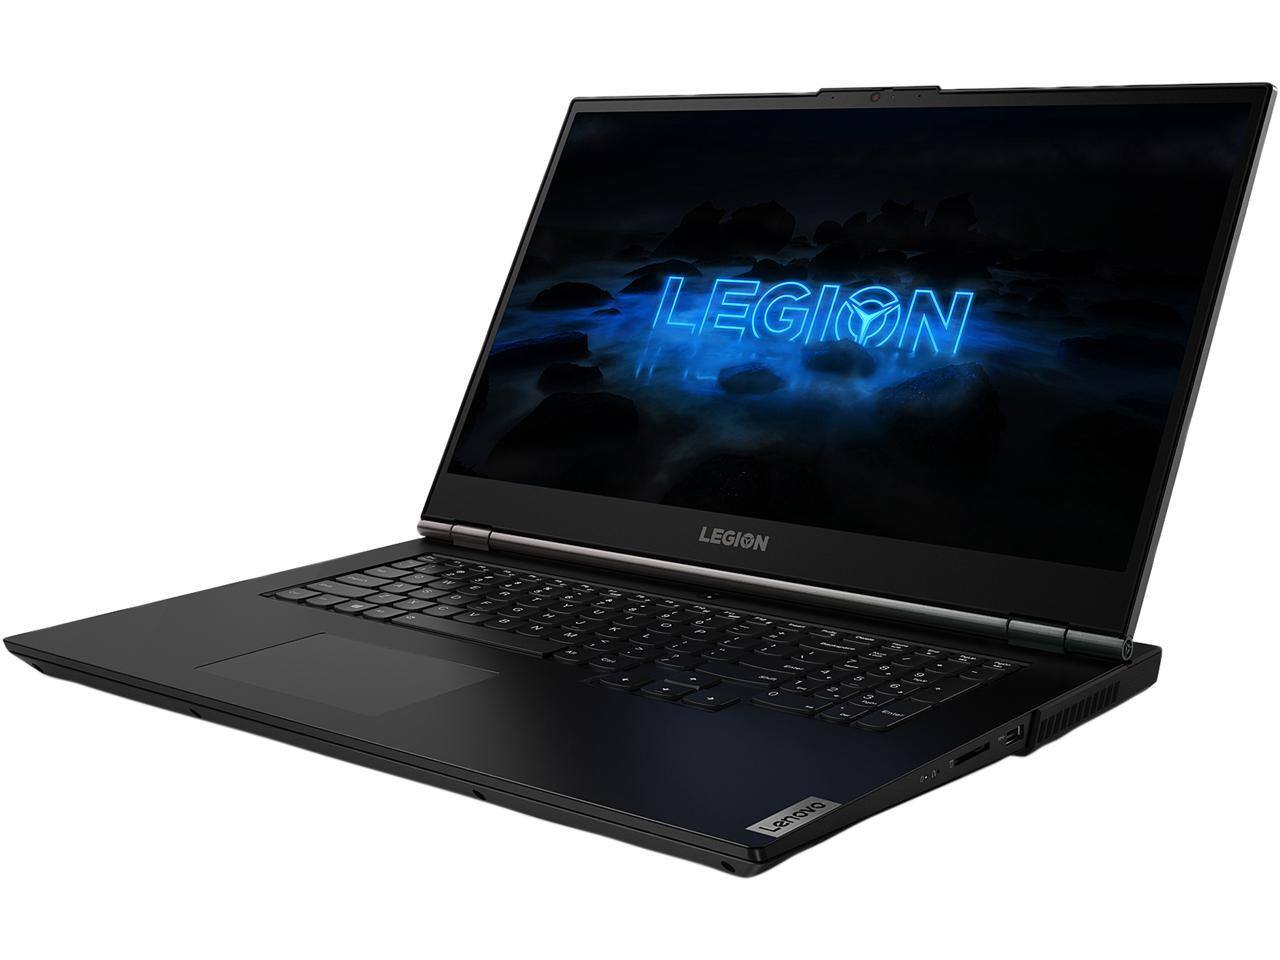 Lenovo Legion 5 [17.3" screen, Intel Core i7-10750H, GeForce RTX 2060, 16GB DDR4, 256 GB SSD, 1 TB HDD] Gaming Laptop for $1199.99 + FS